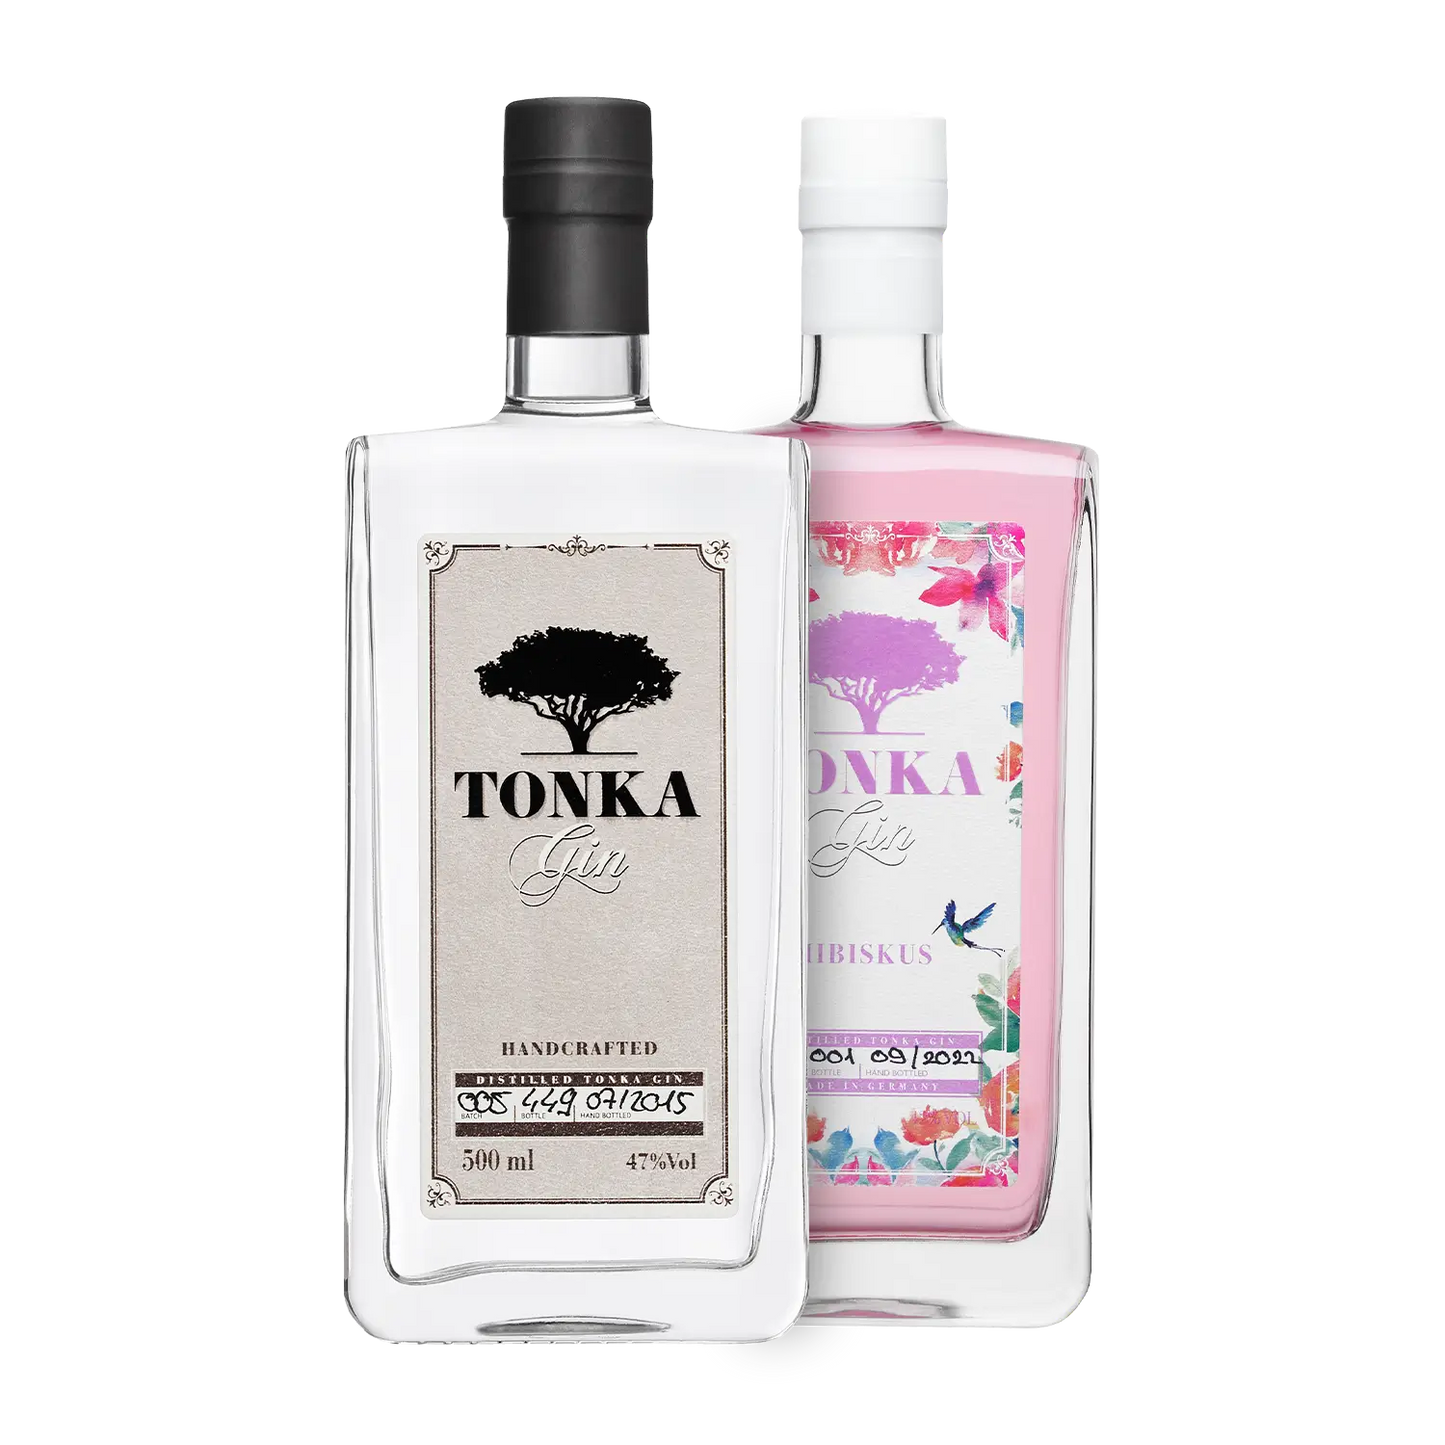 Tonka Gin Kennenlern-Bundle | Das perfekte Gin-Liebhaber Geschenk –  Spirituosenliebhaber